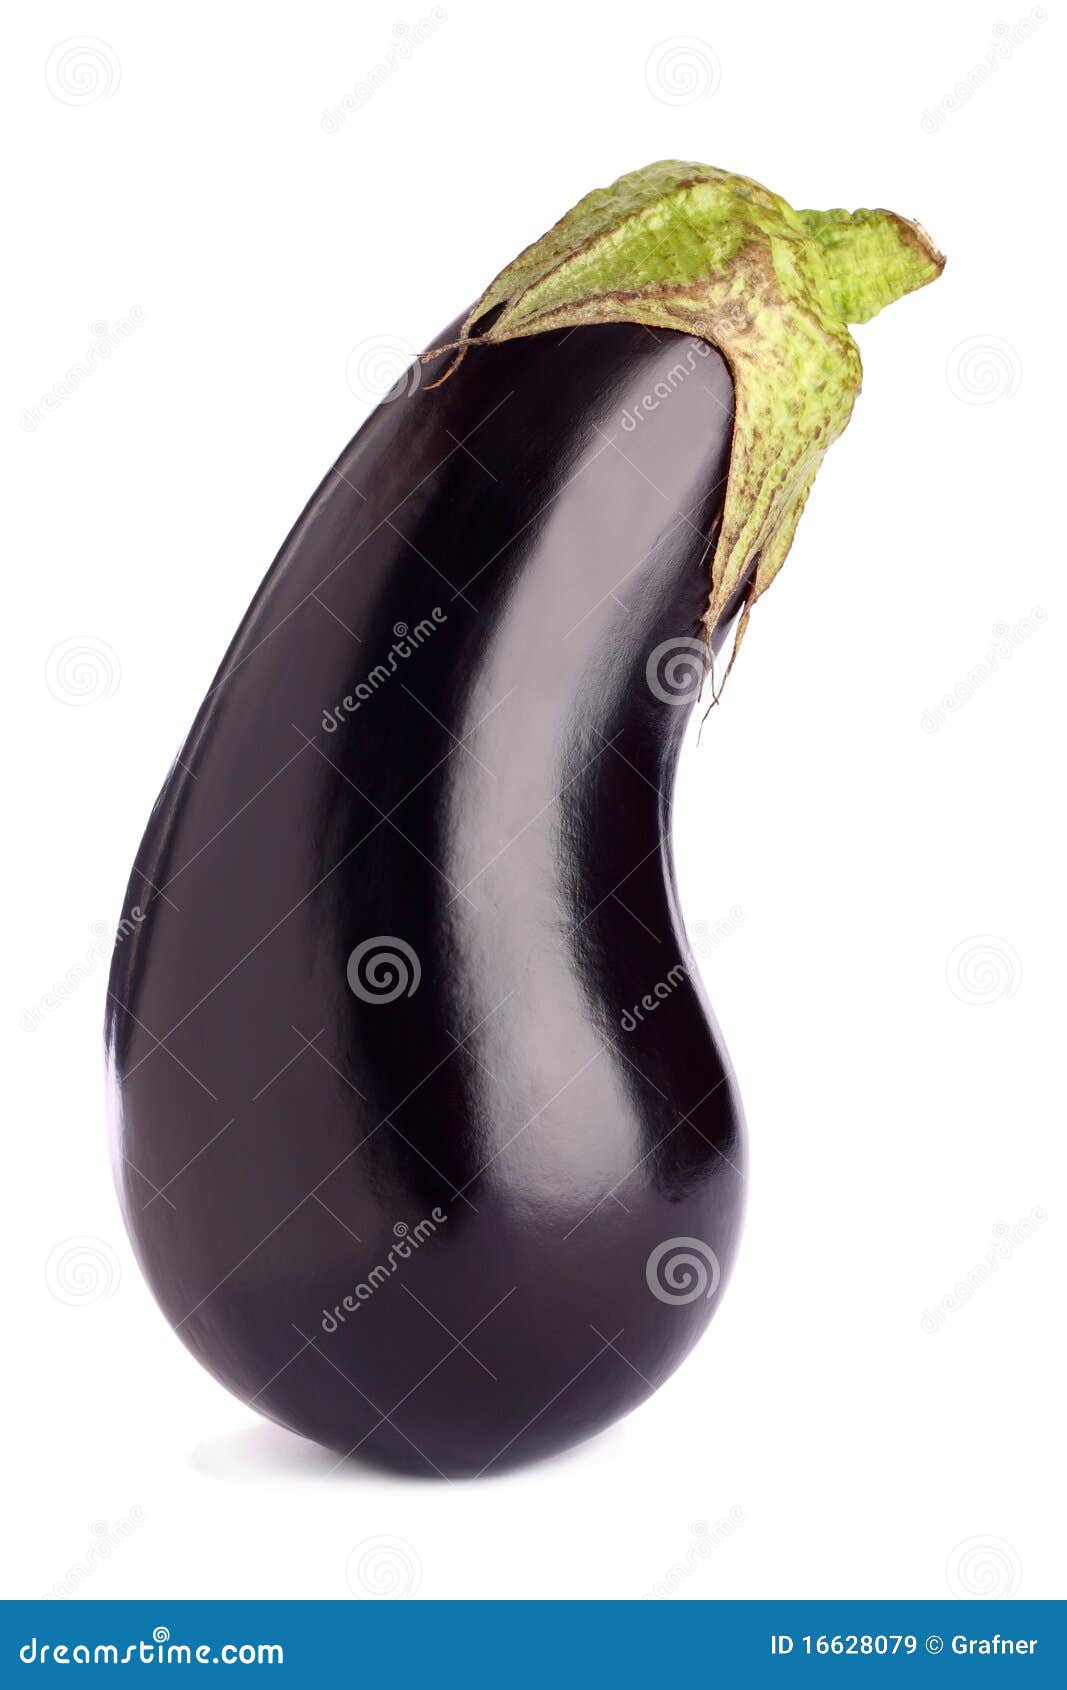 aubergine